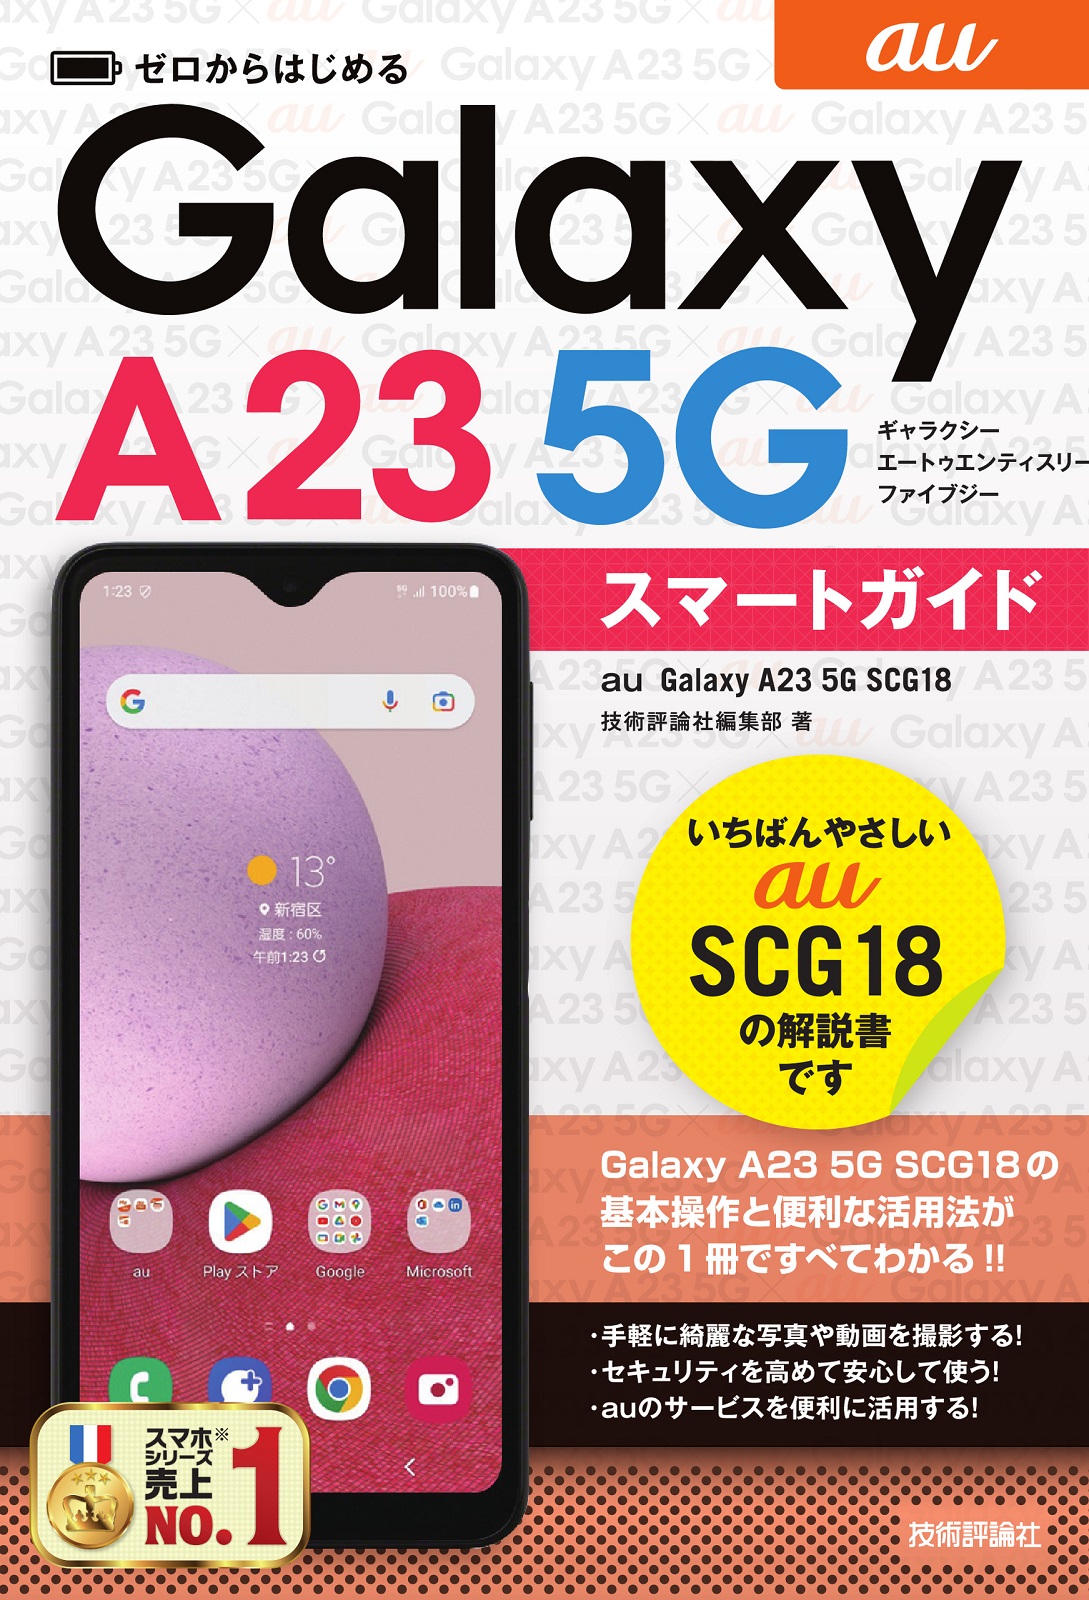 ゼロからはじめる au Galaxy A30 SCV43 スマートガイド+au Androidスマートフォン 基本&活用ワザ 完全ガイド 合計2冊セット